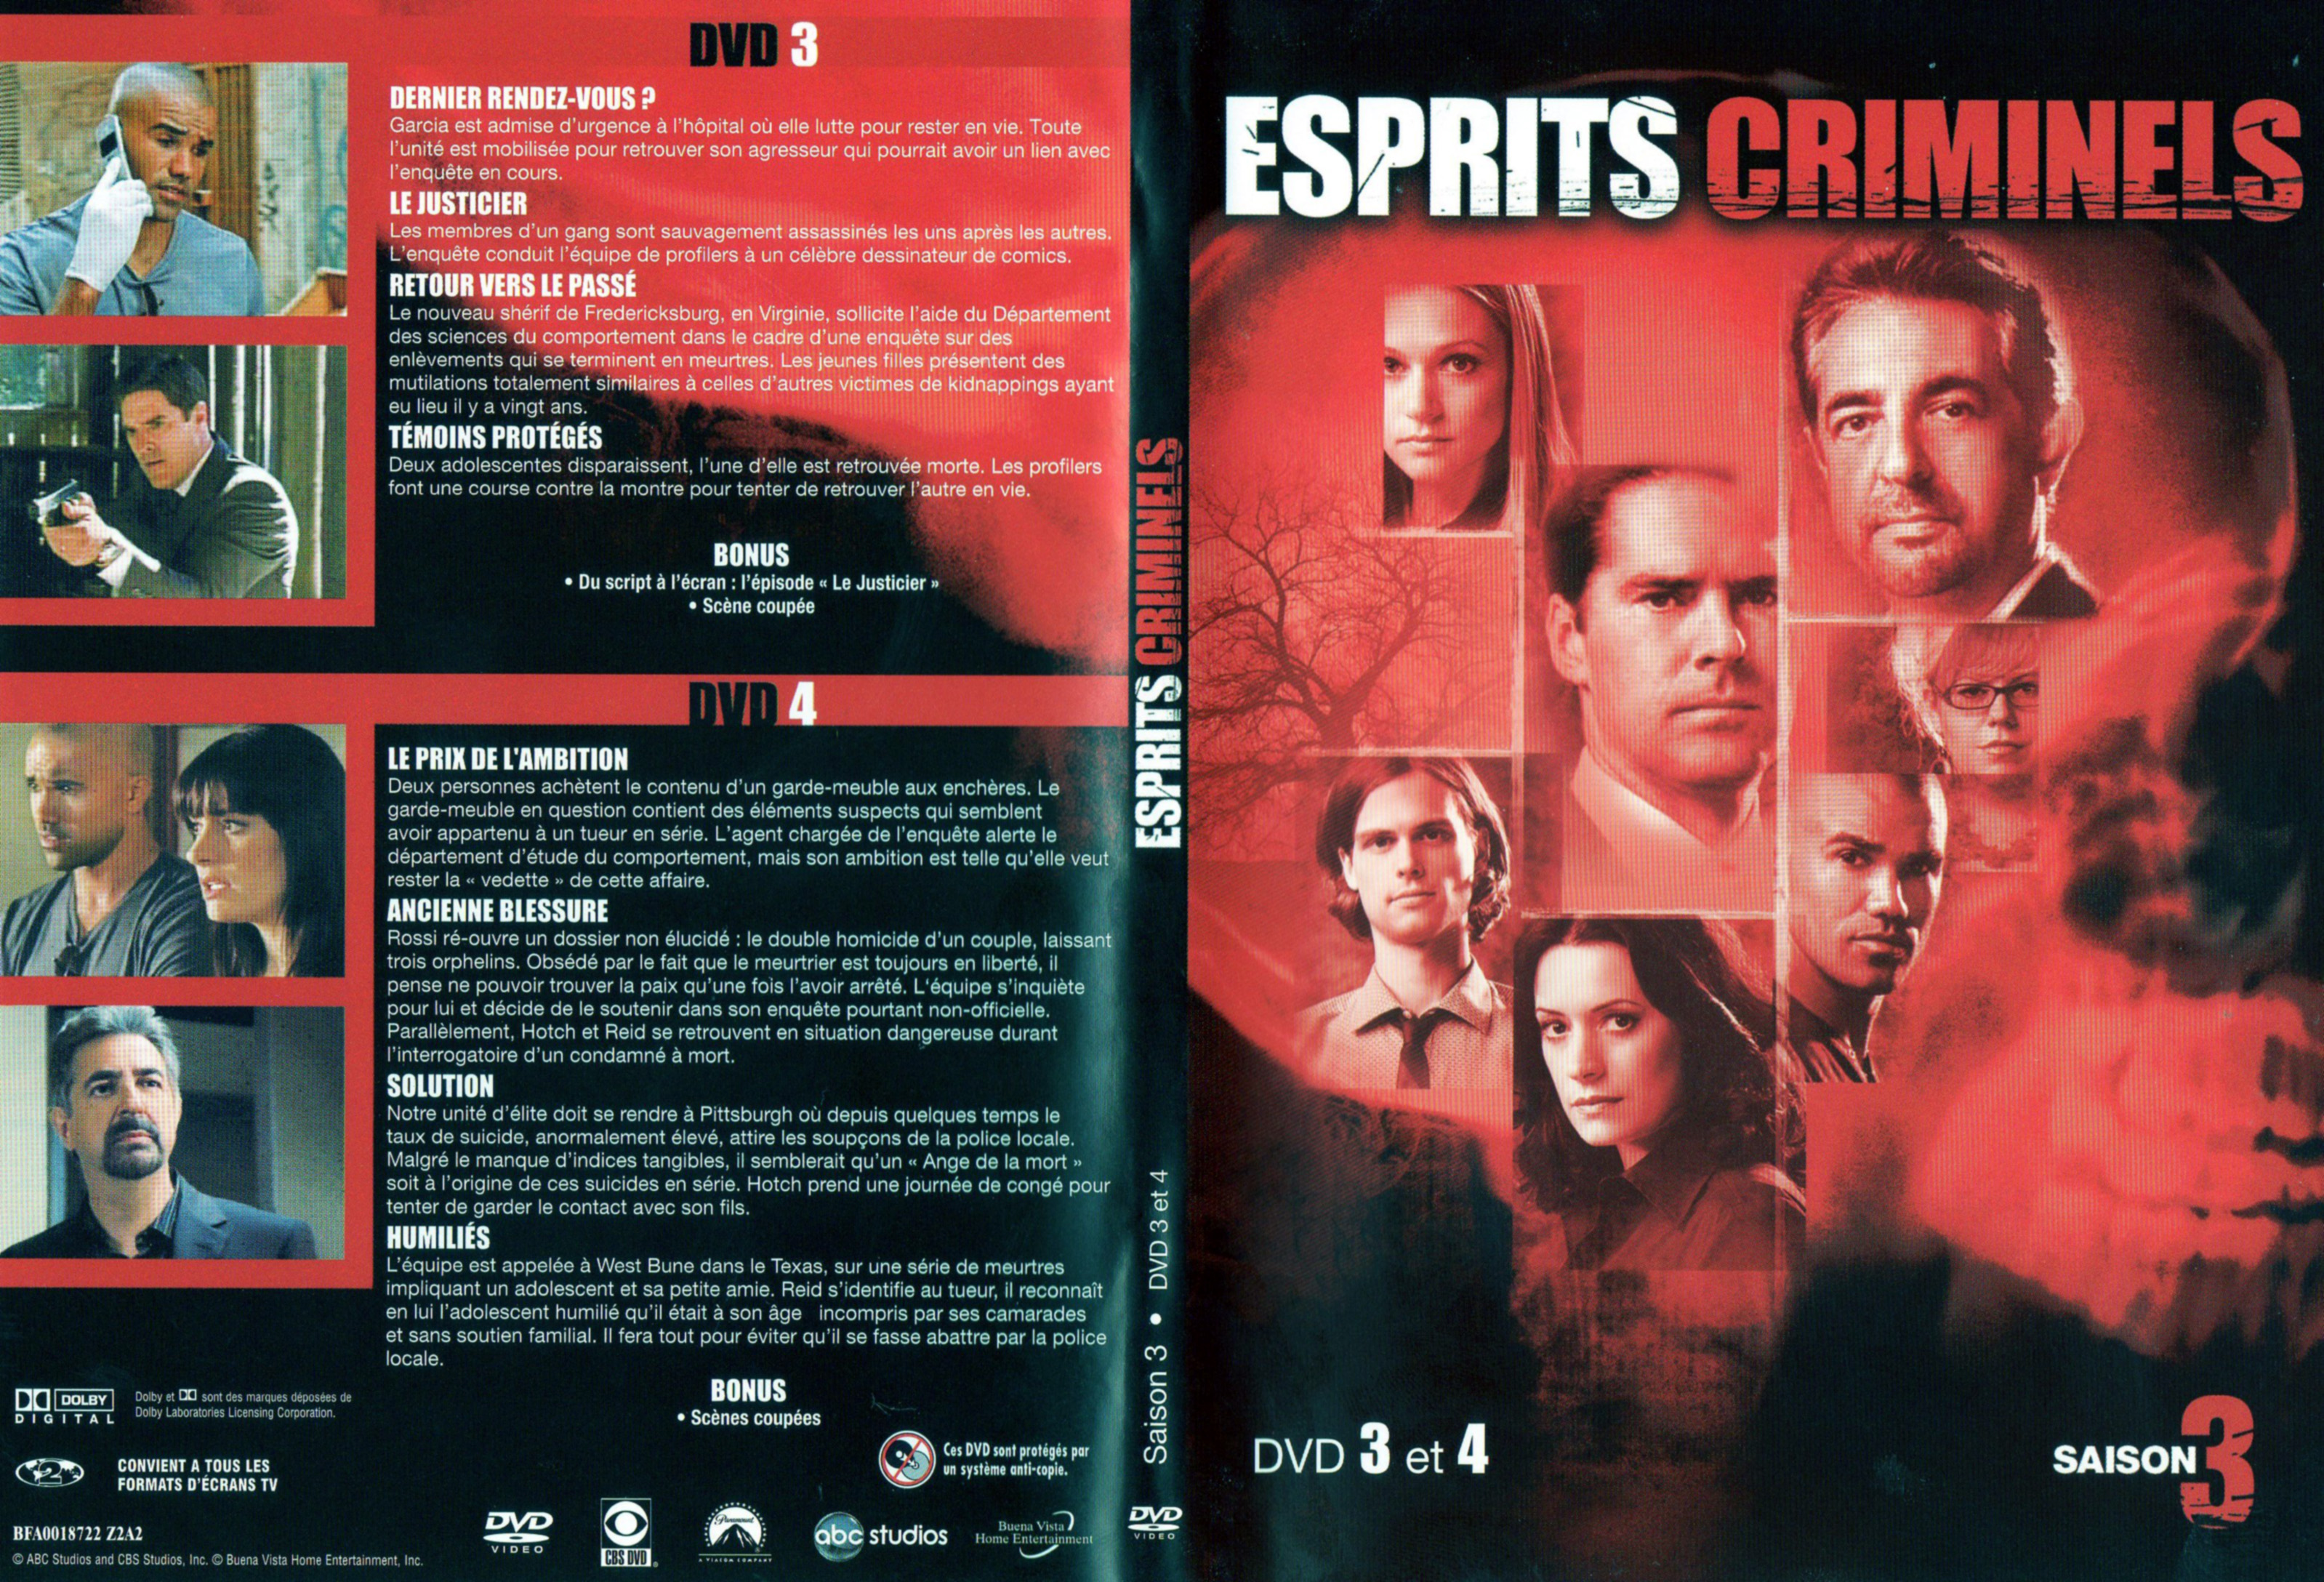 Jaquette DVD Esprits criminels Saison 3 DVD 2